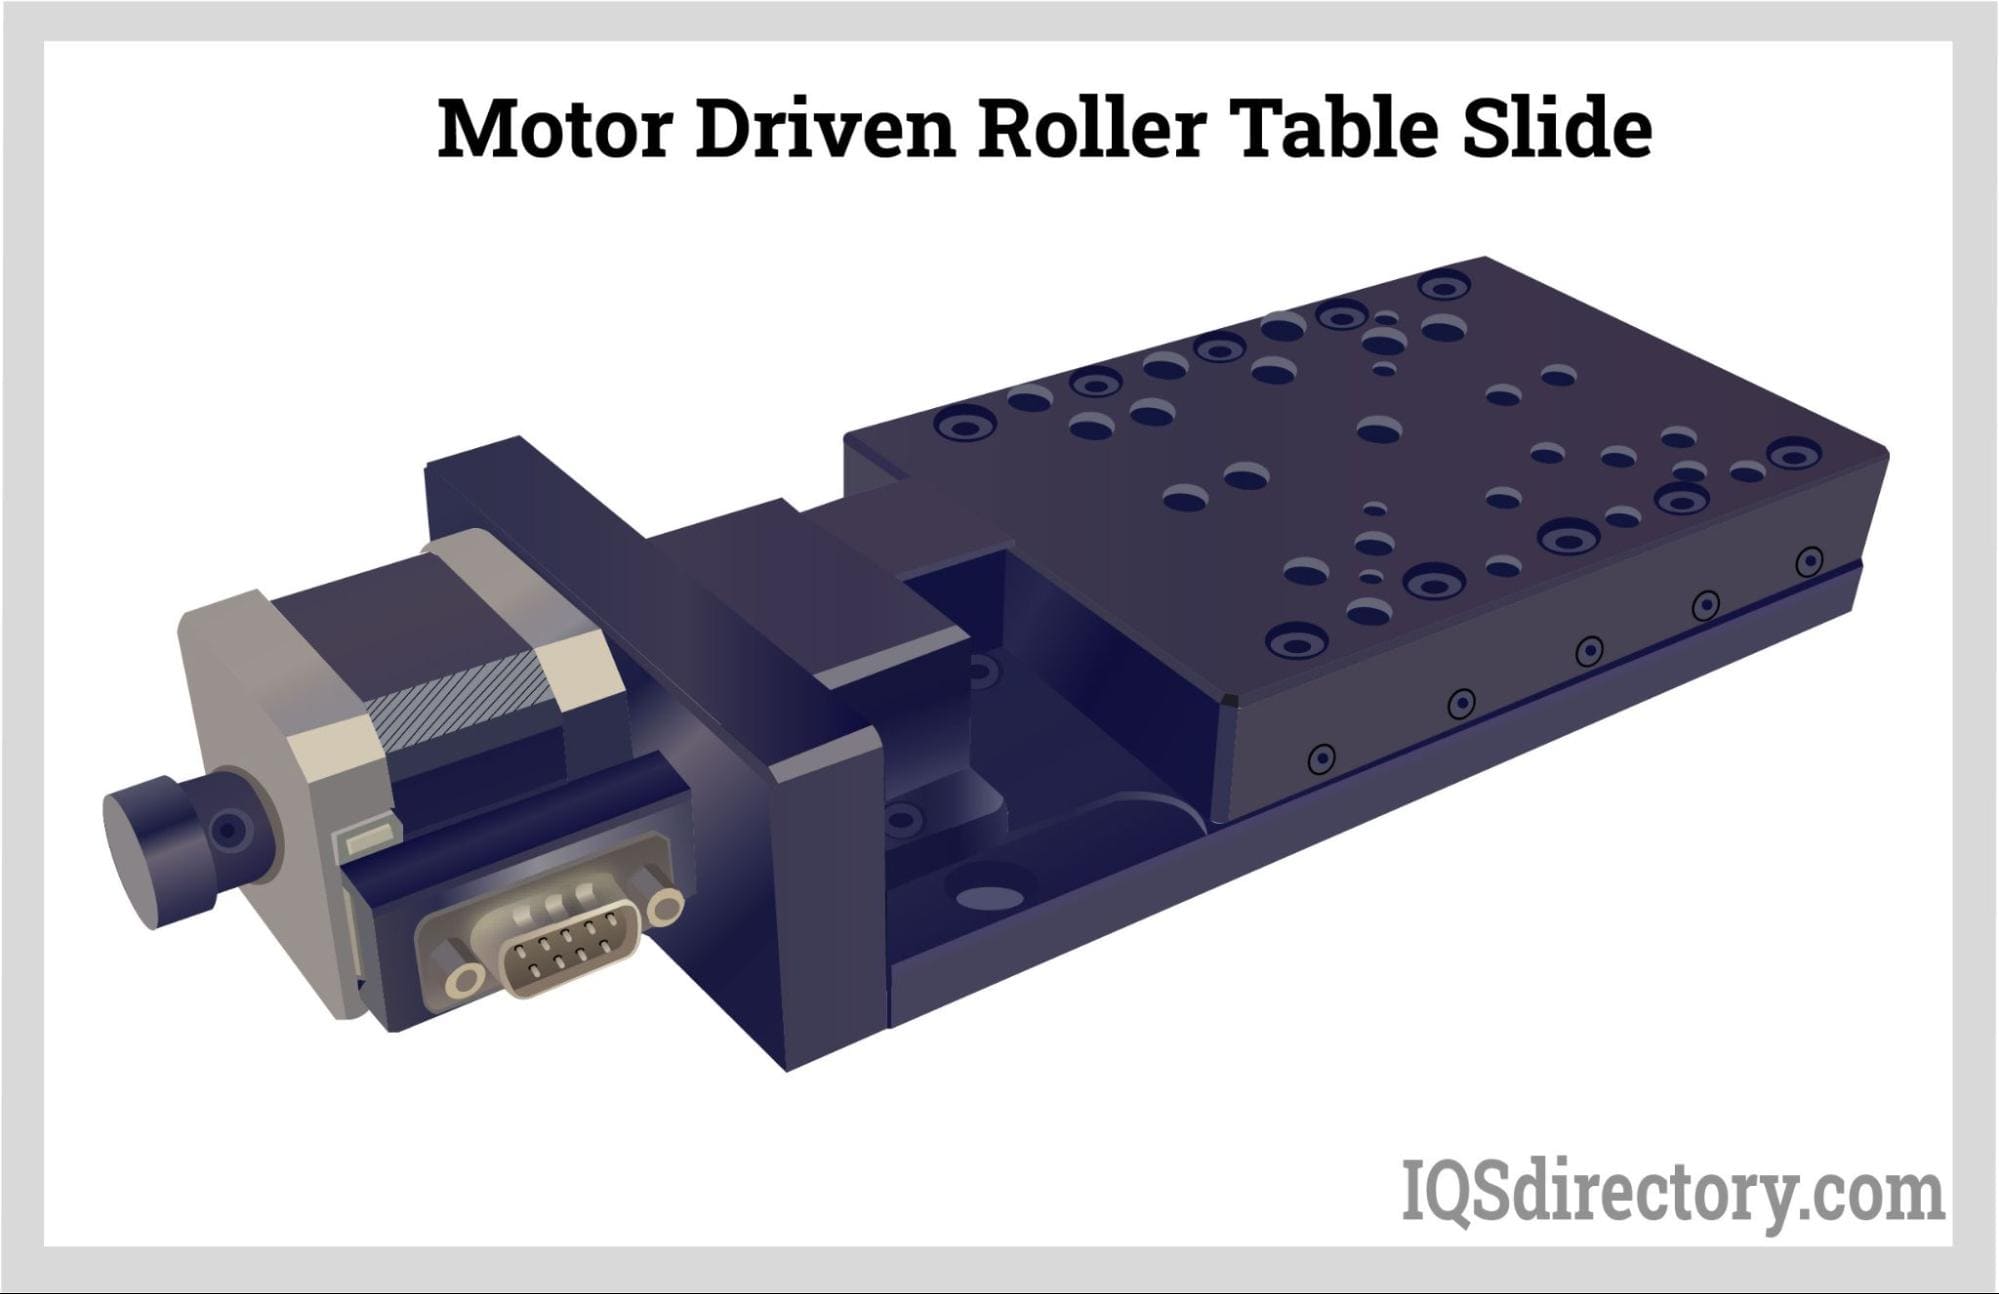 Motor Driven Roller Table Slide